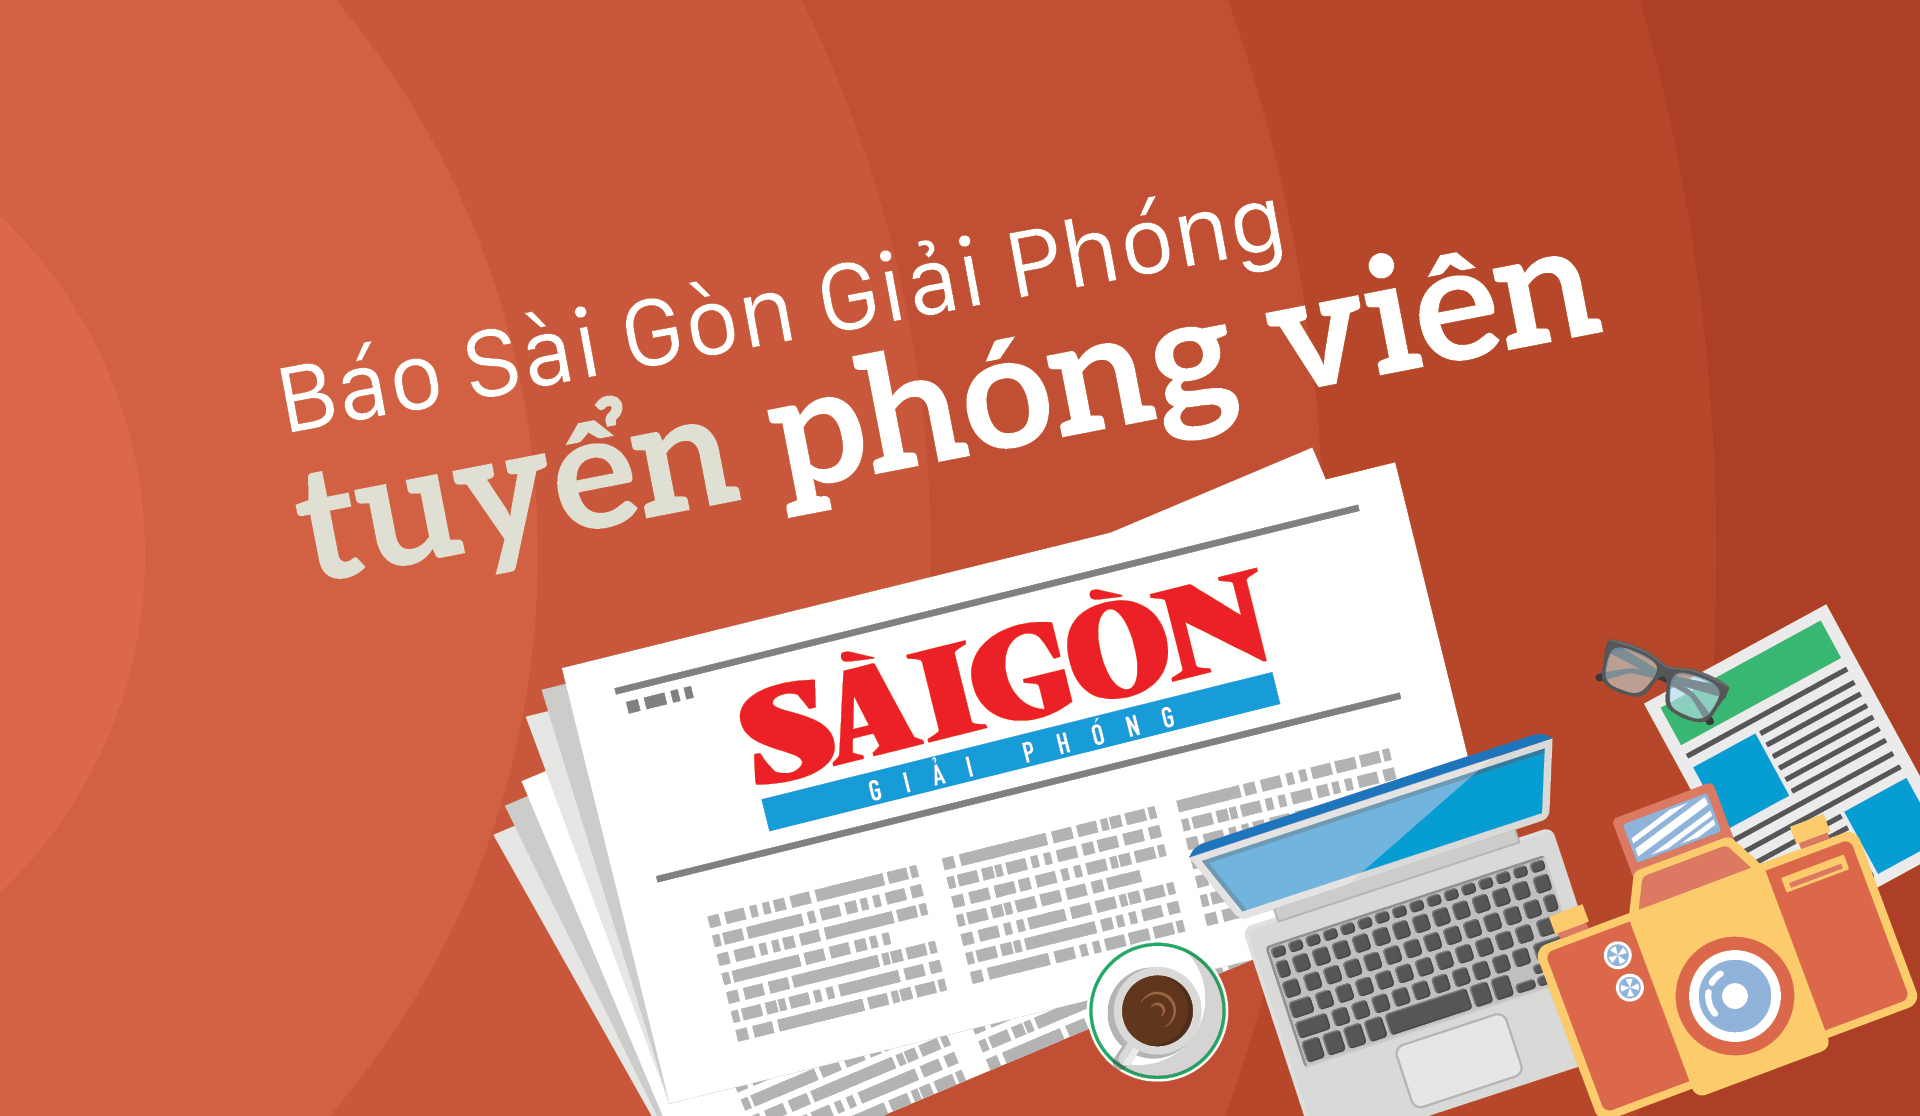 Báo Sài Gòn Giải Phóng tuyển phóng viên